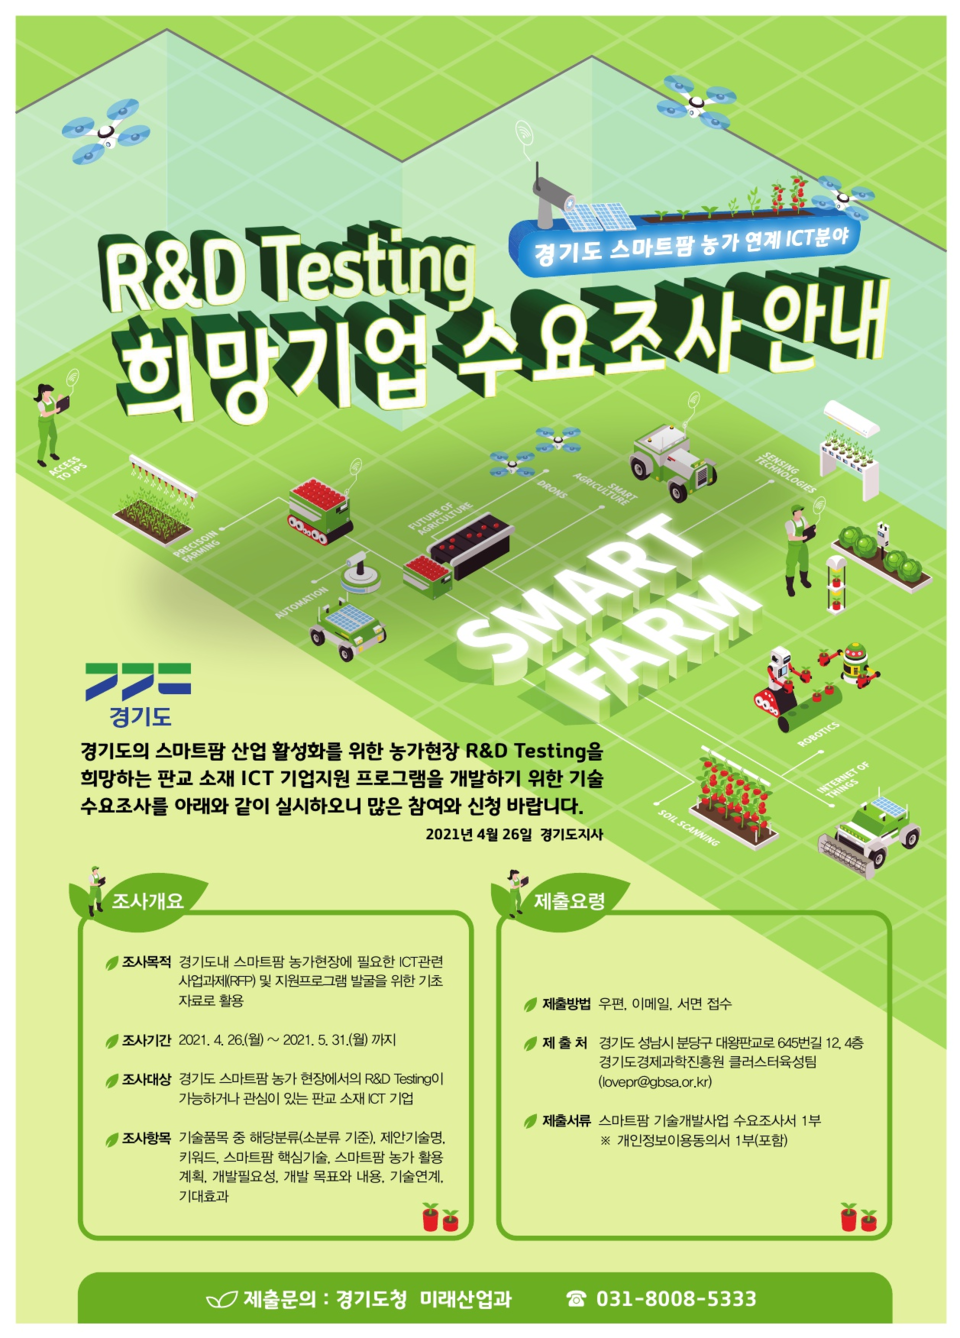 R&D Testing 희망기업 수요조사 안내 포스터[경기도]